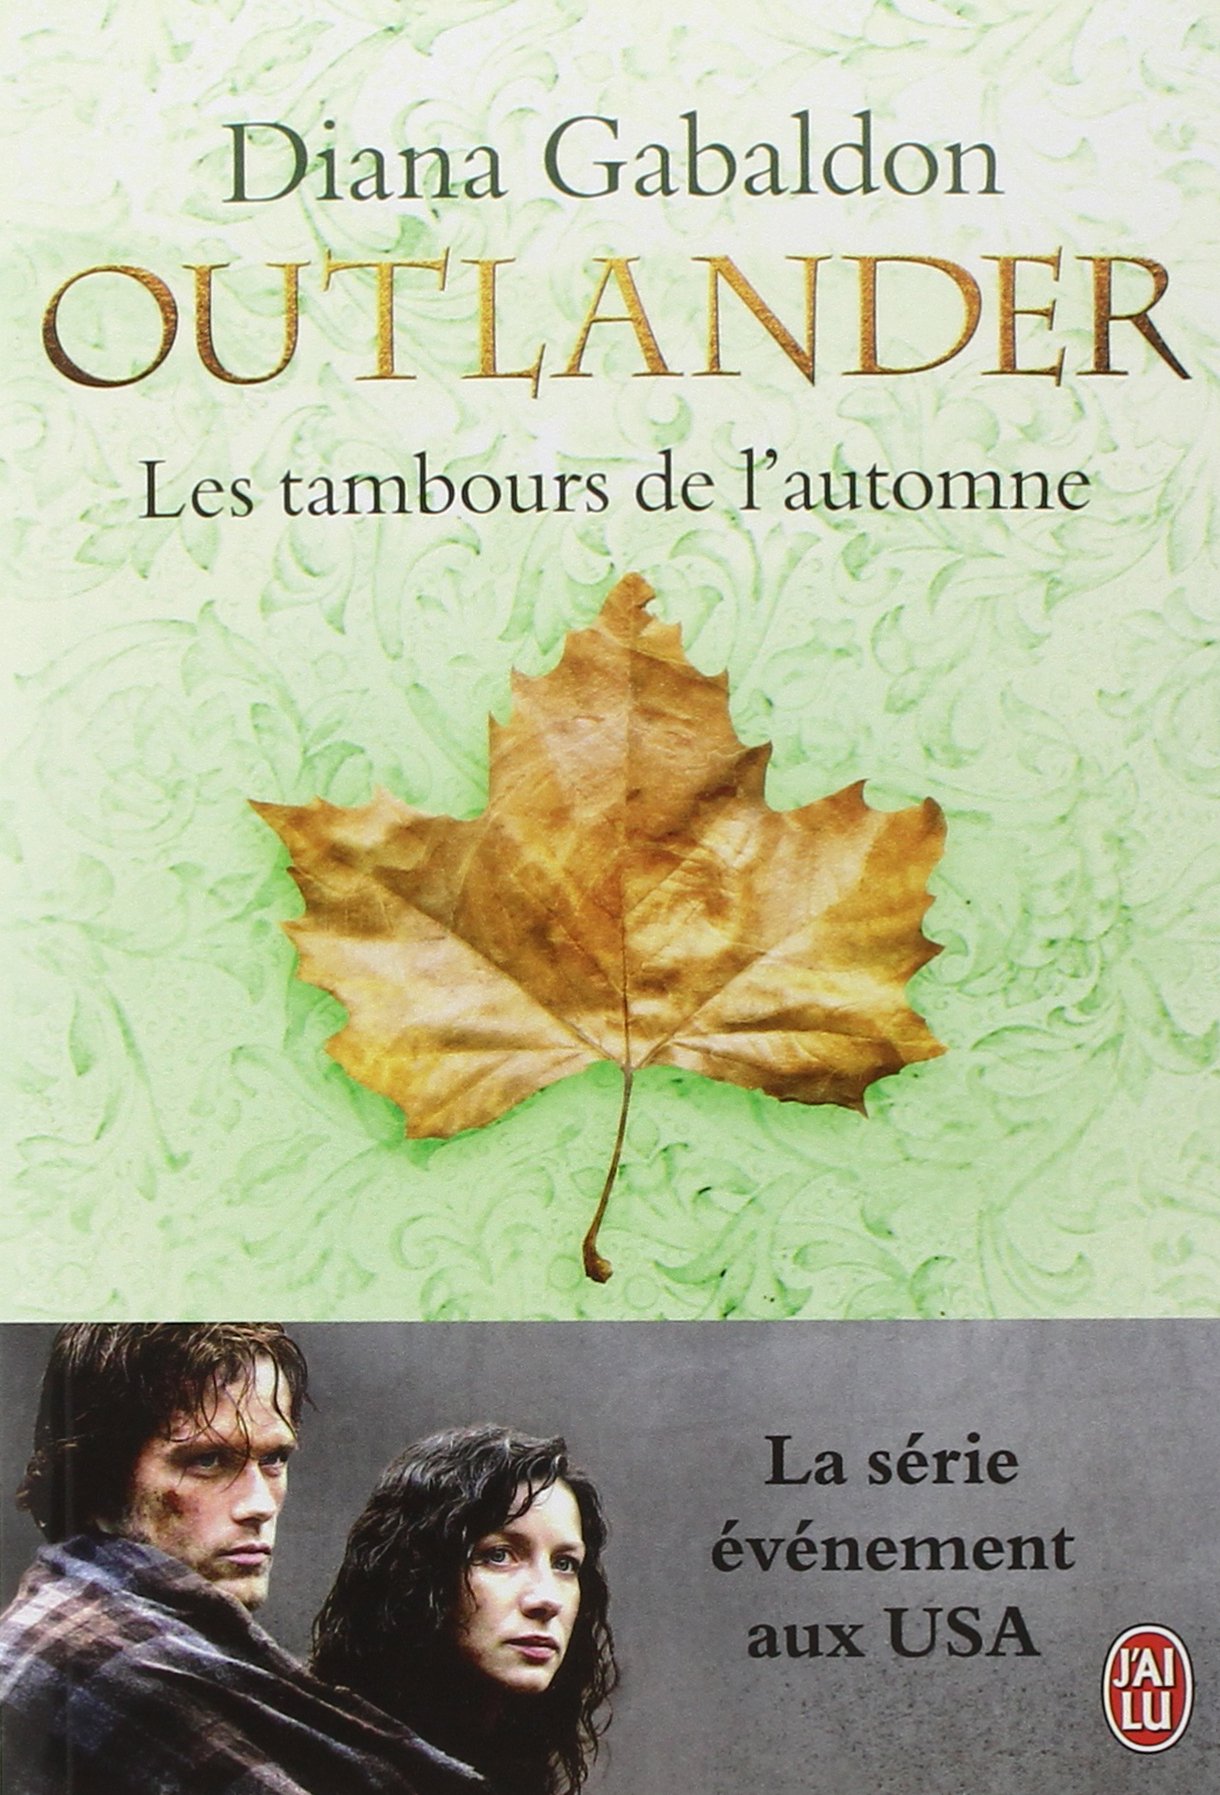 La série ''Le chardon et le tartan'' / Outlander de Diana Gabaldon : Ordre de lecture - Page 3 81dtjtBXMSL